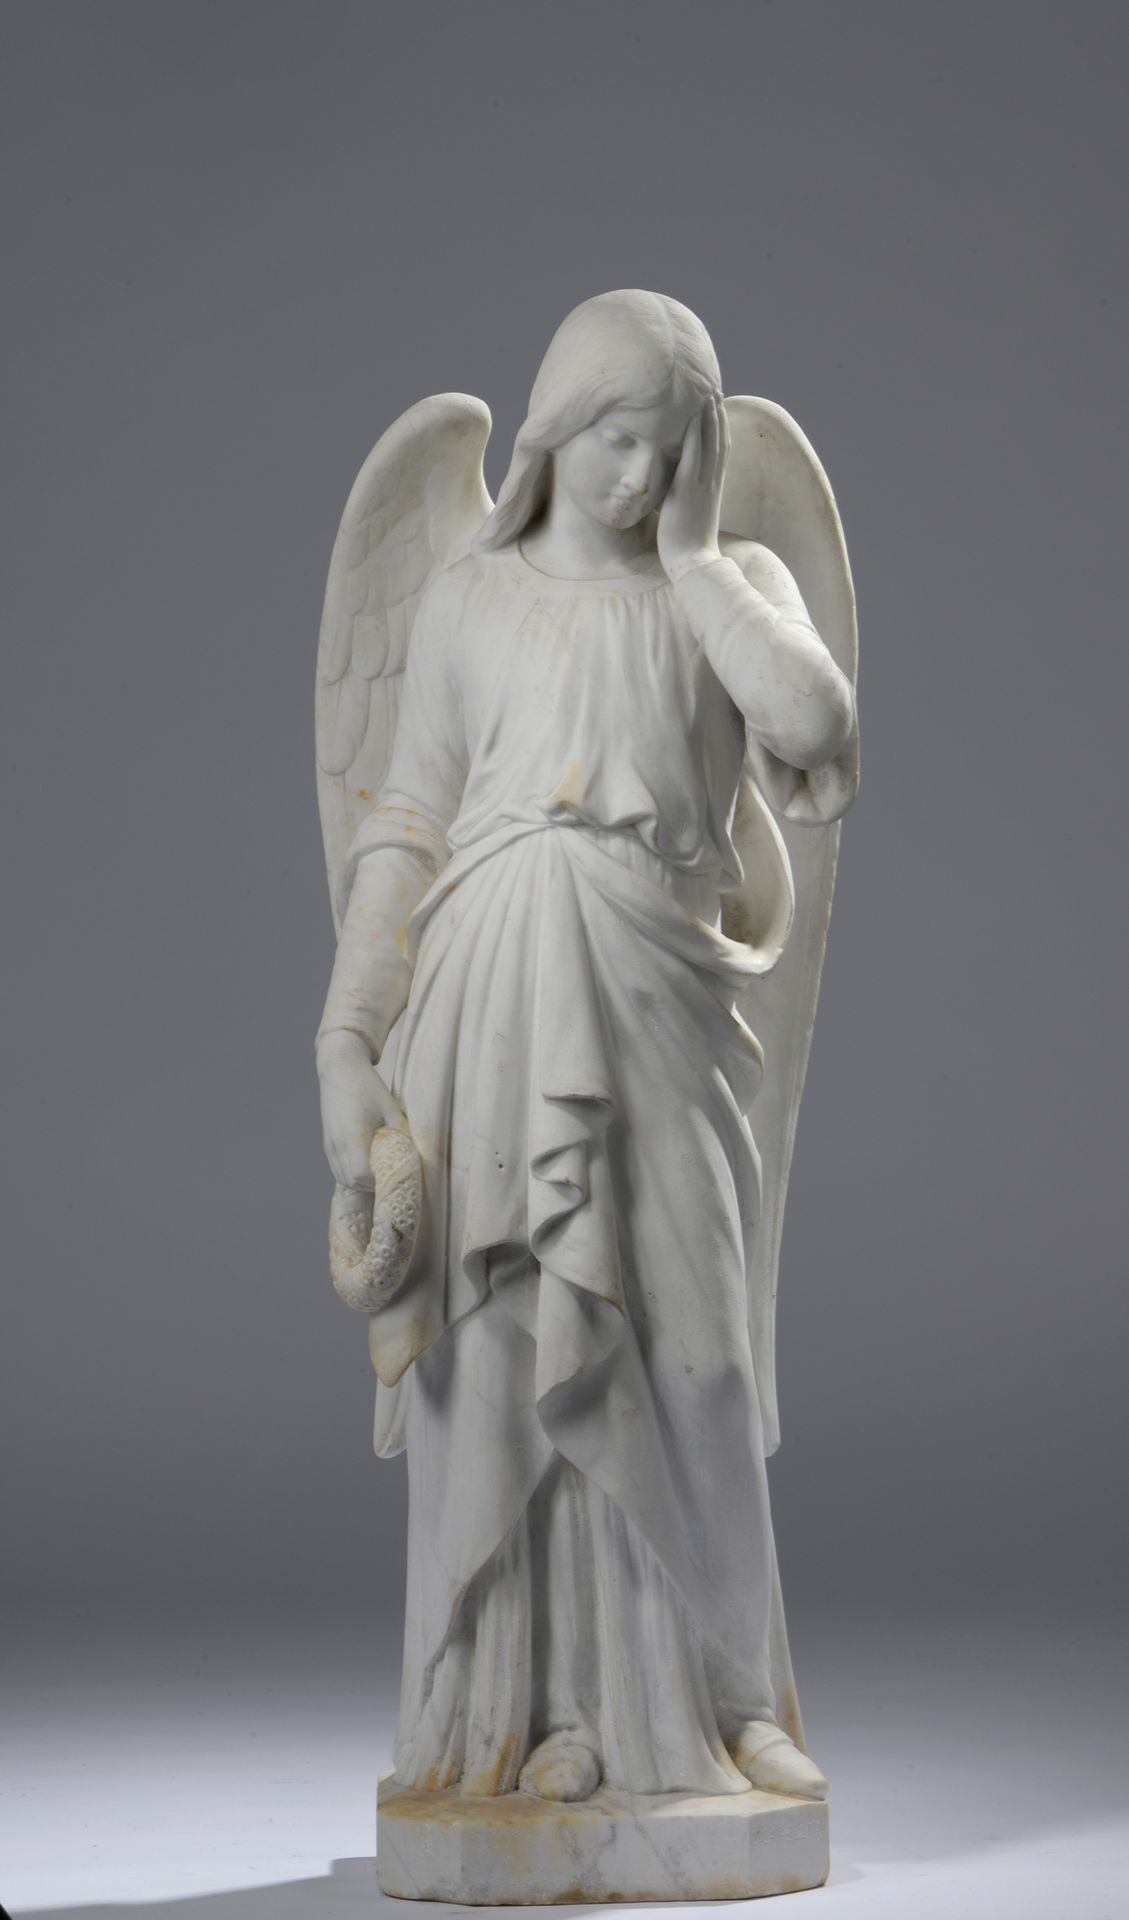 Null 查尔斯-卡佩拉罗（1826-1899）
带着葬礼花环的哭泣天使 
大理石雕塑。
底座上有签名。 
底座上有小缺口。
H.90 厘米